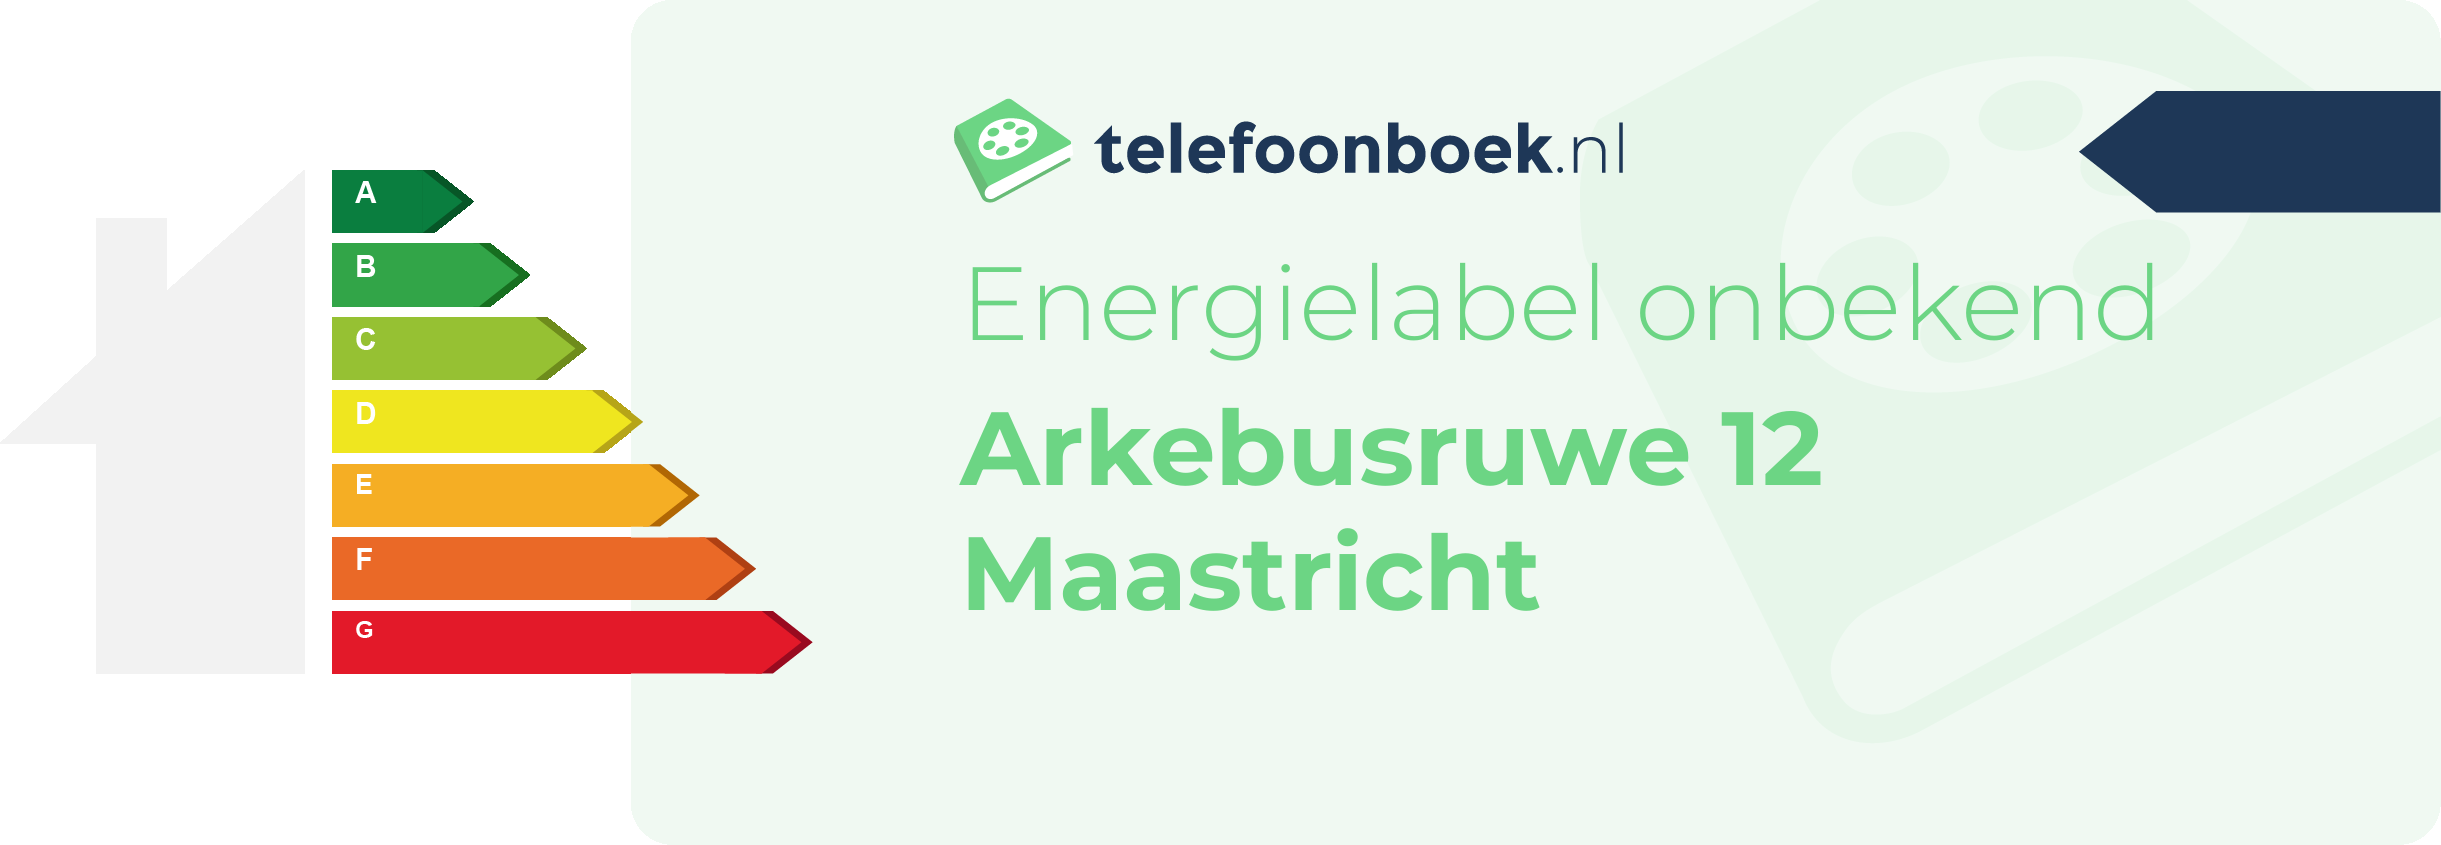 Energielabel Arkebusruwe 12 Maastricht